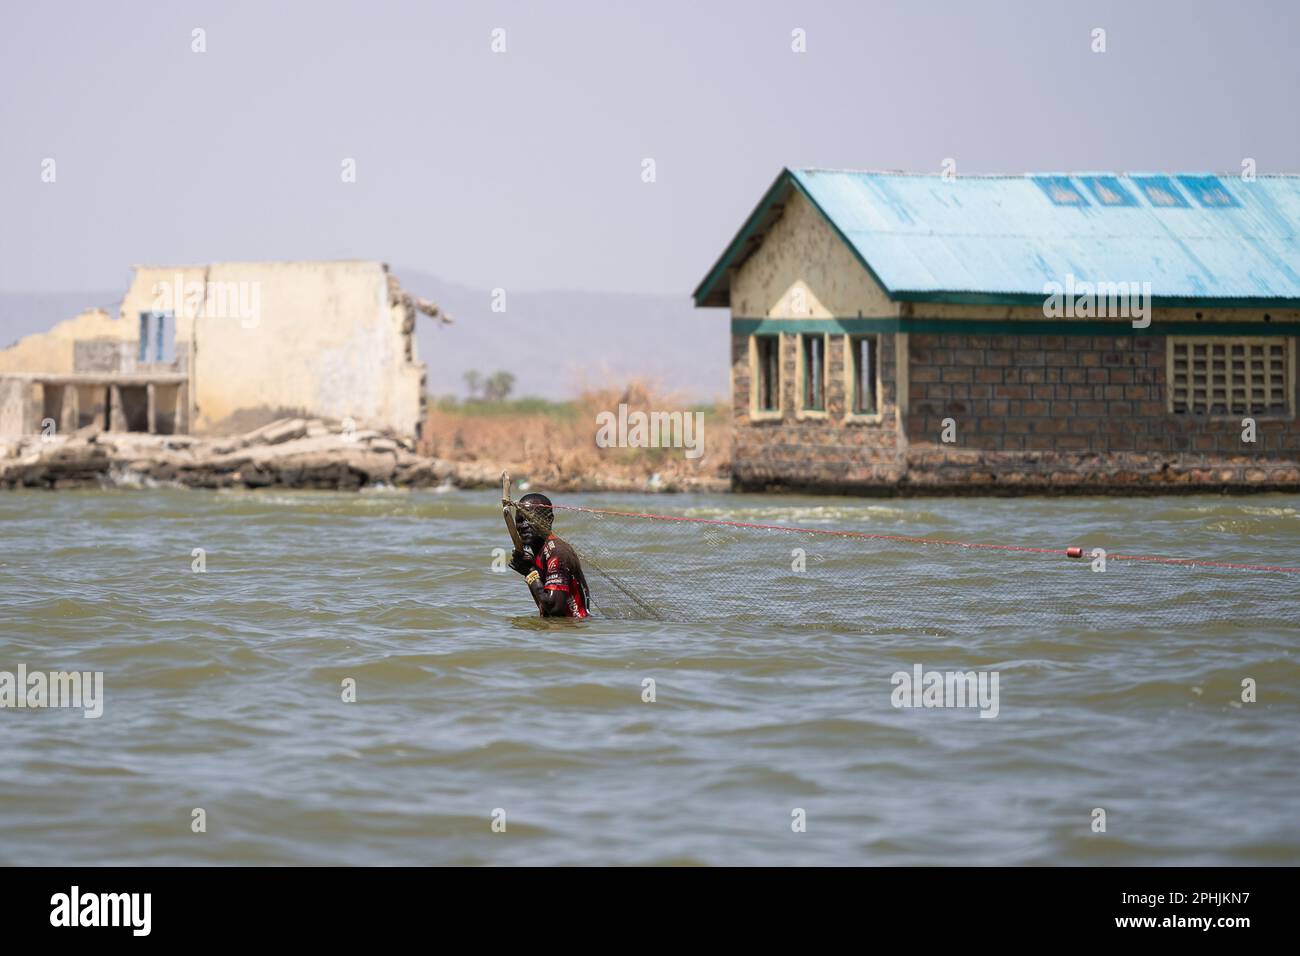 Kalokol, Kenia. 14. Februar 2023. Ein Kalokol-Fischer, der mit seinem Netz im Turkana-See spaziert. Das Dorf Kalokol ist in den letzten Jahren überflutet worden, weil der Turkana-See und alle anderen Seen des Rift Valley aufgrund des Klimawandels enorm angestiegen sind. Dieses Phänomen hat ganze Dörfer überschwemmt, die Bevölkerung gezwungen, ihre Häuser und Geschäfte aufzugeben, und hat verheerende Auswirkungen auf die natürlichen Ökosysteme. (Kreditbild: © Simone Boccaccio/SOPA Images via ZUMA Press Wire) NUR REDAKTIONELLE VERWENDUNG! Nicht für den kommerziellen GEBRAUCH! Stockfoto